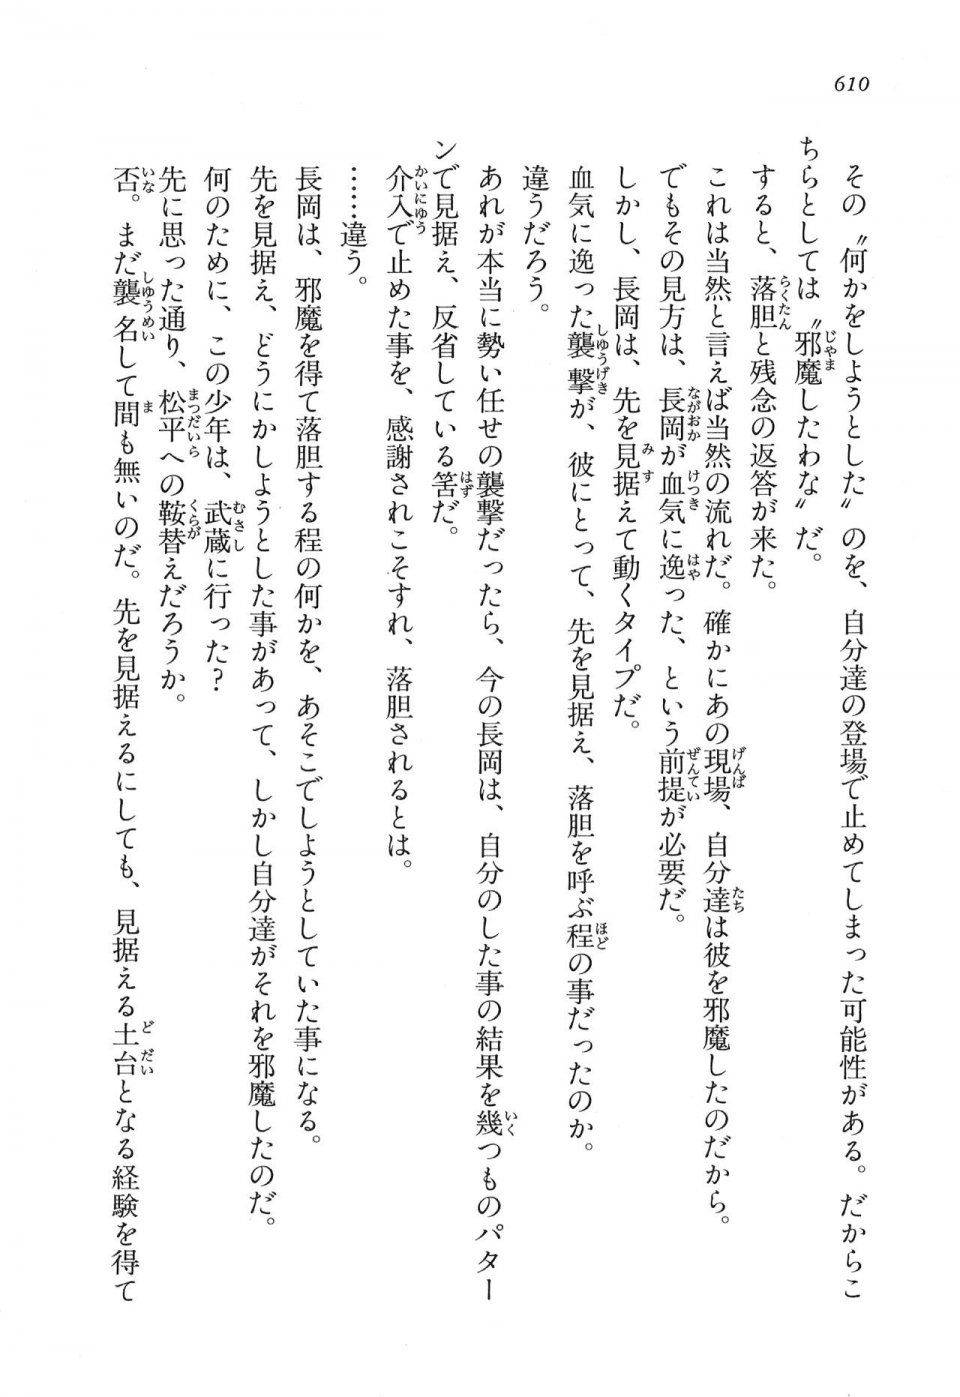 Kyoukai Senjou no Horizon LN Vol 16(7A) - Photo #610